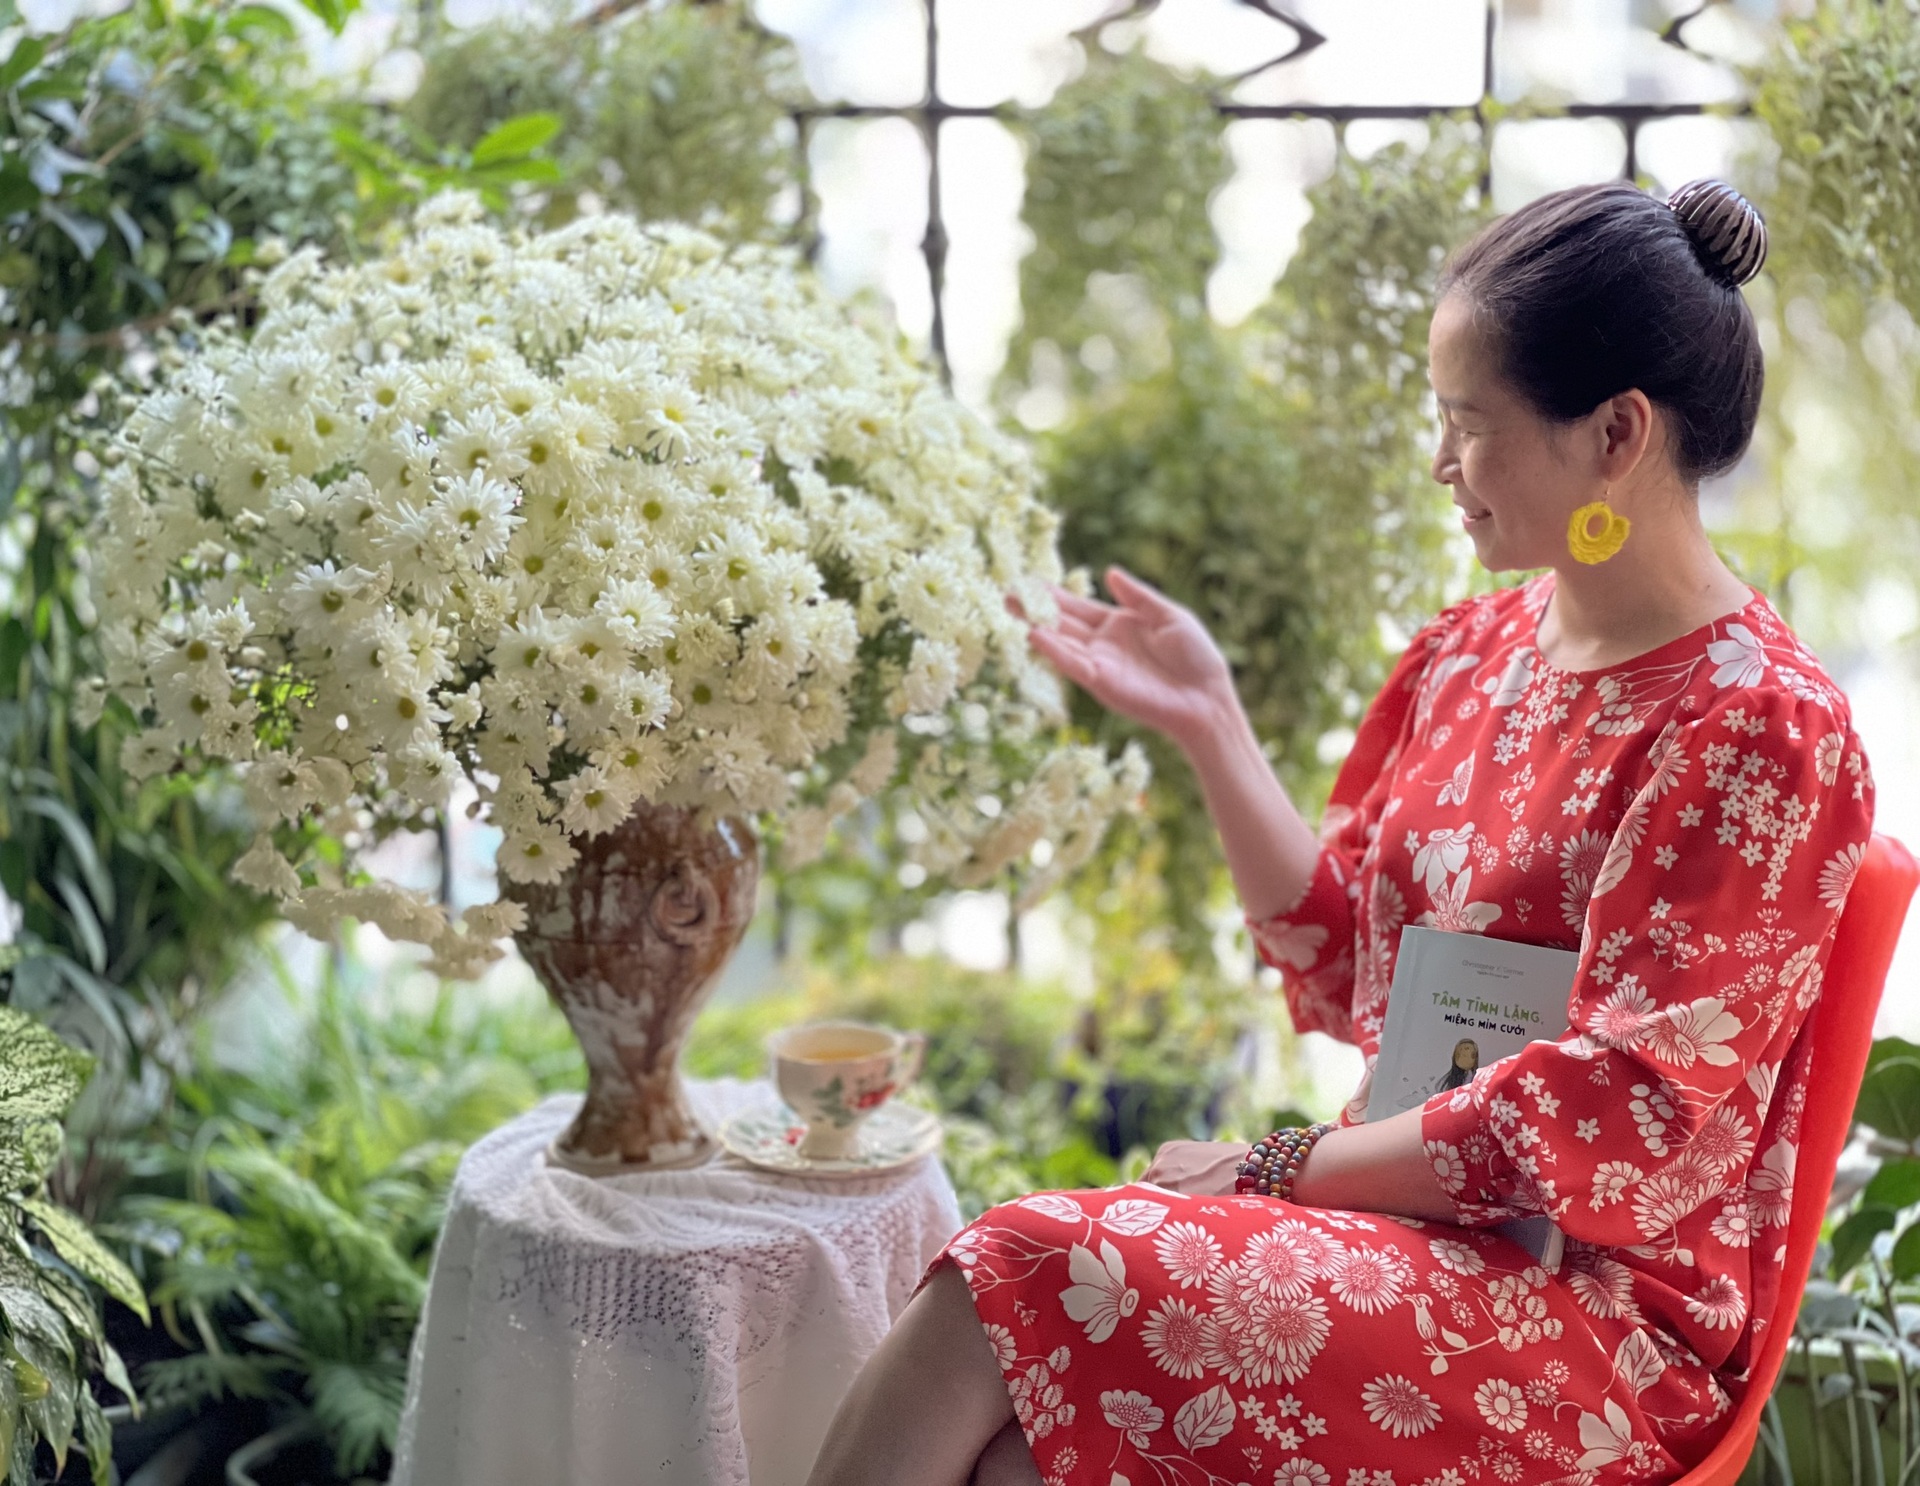 Đã mắt ban công vỏn vẹn 4m2 tựa khu vườn mini với 50 loại cây, hoa ở Hà Nội